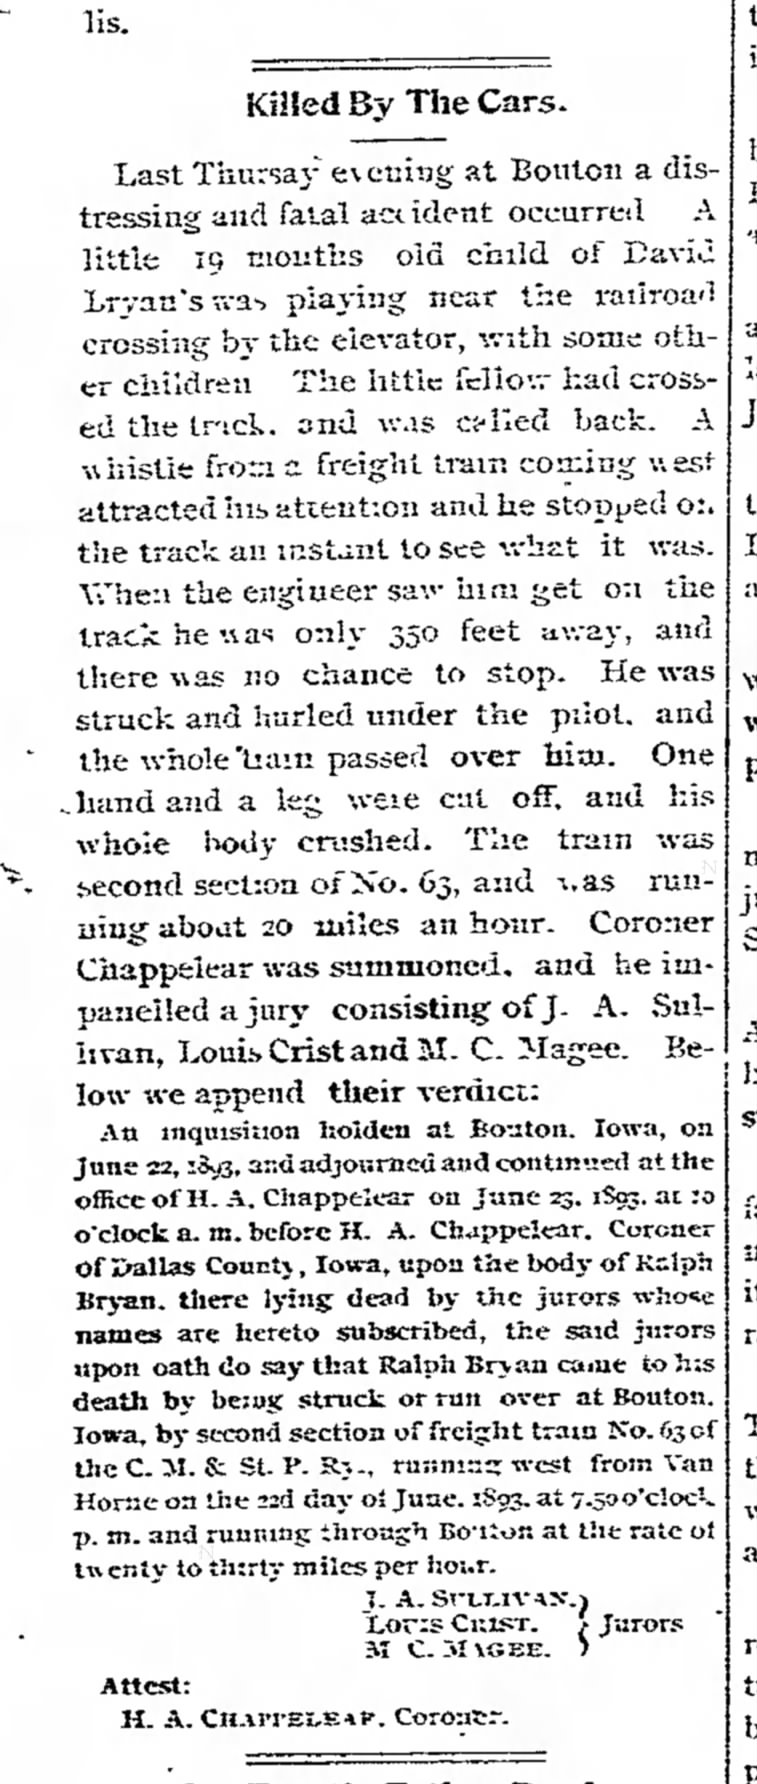 Train death 29 Jun 1893